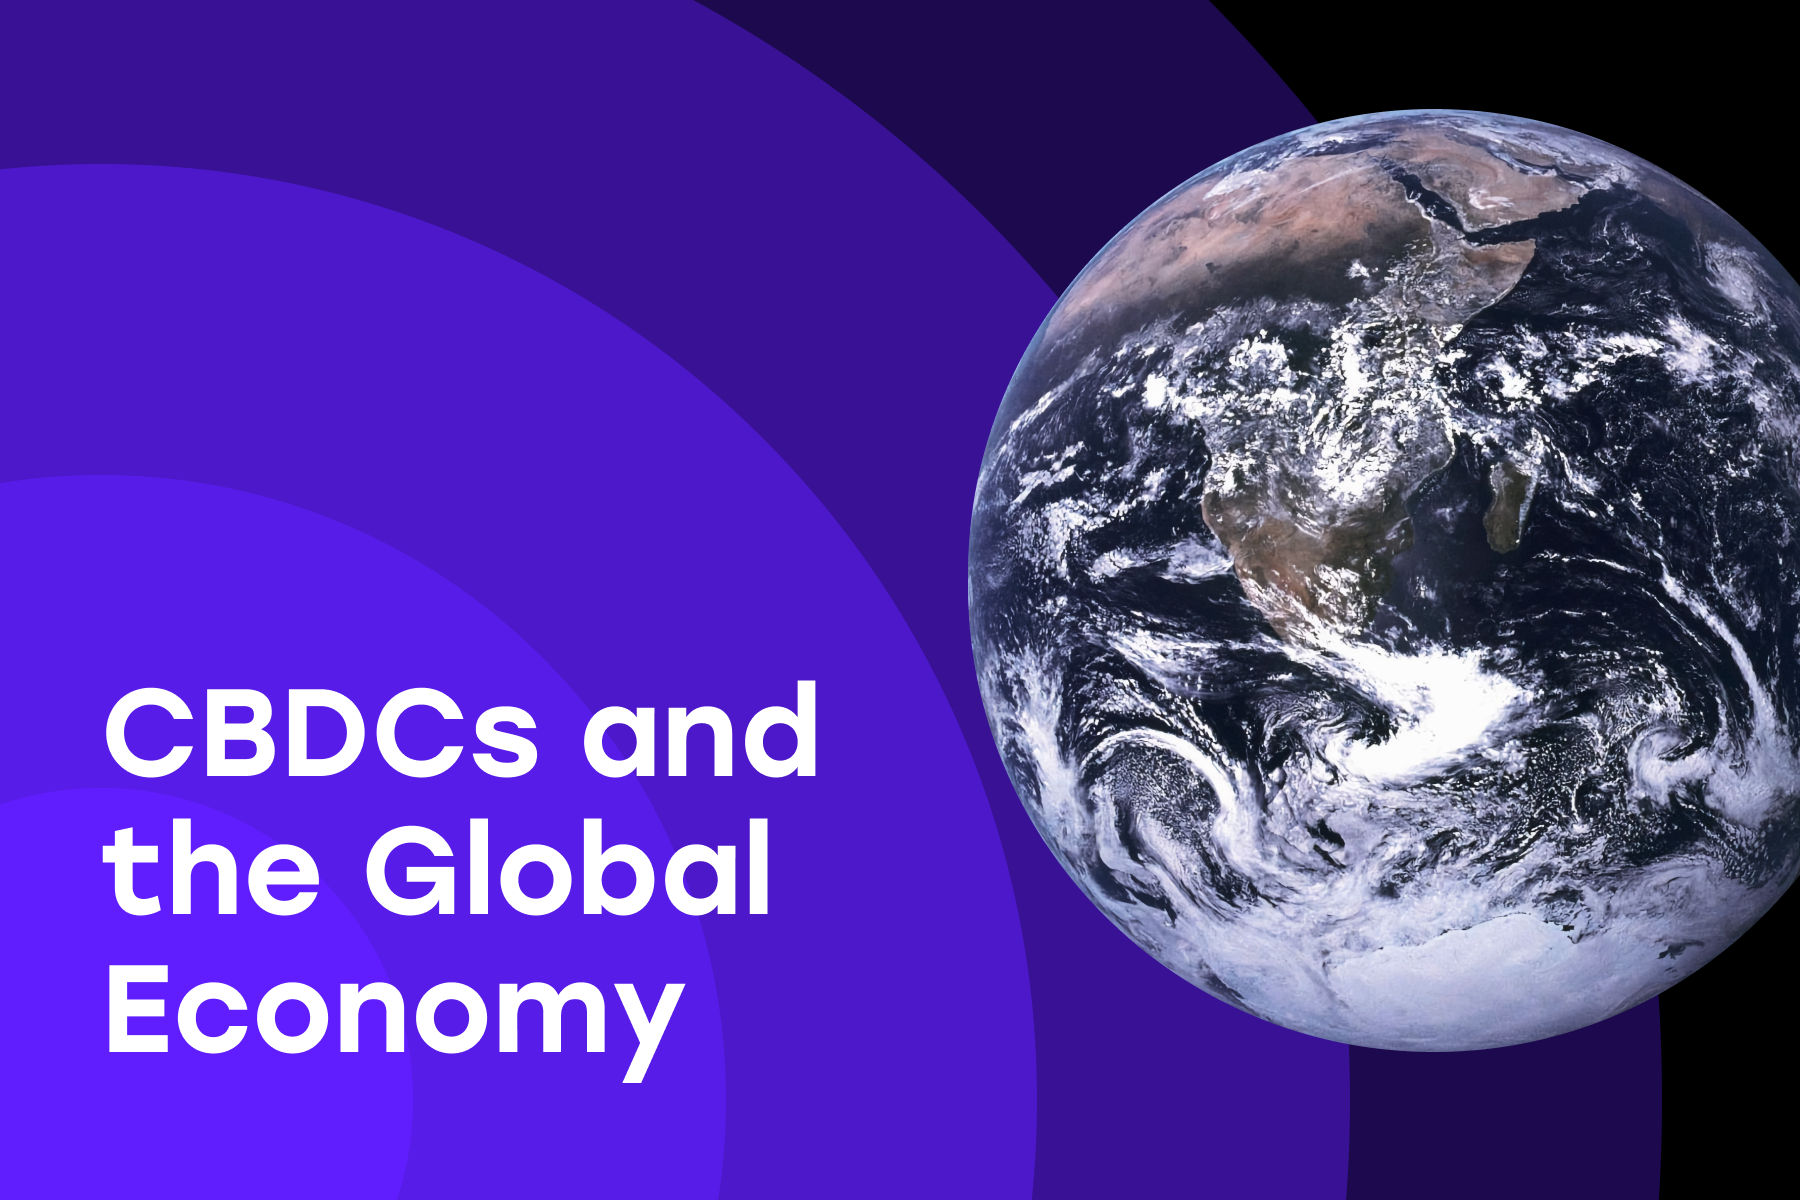 CBDC's Impact on the Global Economy